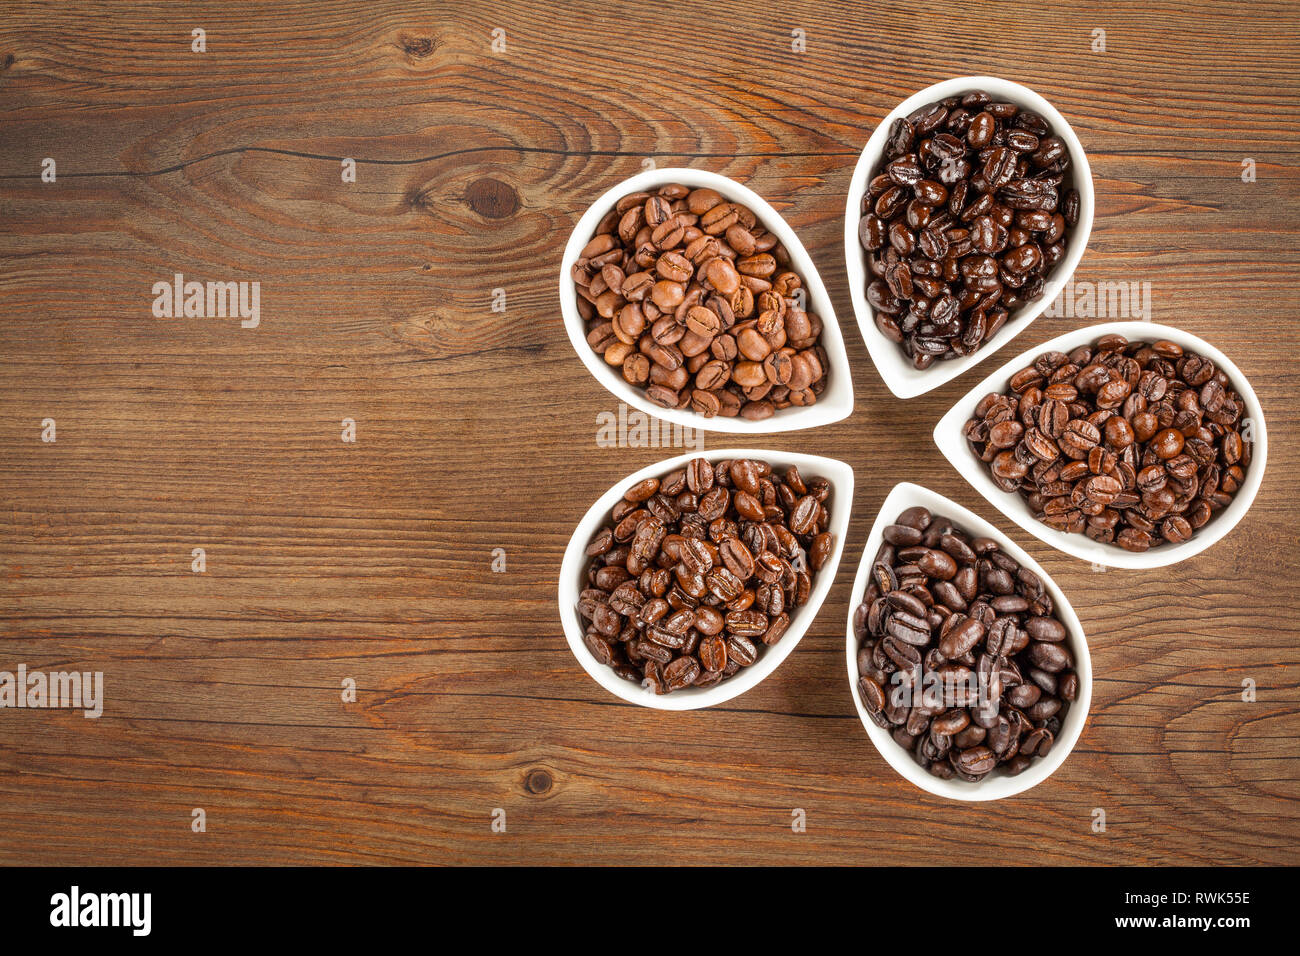 Ansicht von mehreren Sorten von frisch gerösteten Kaffeebohnen auf braunem Holz- Hintergrund mit kopieren. Stockfoto